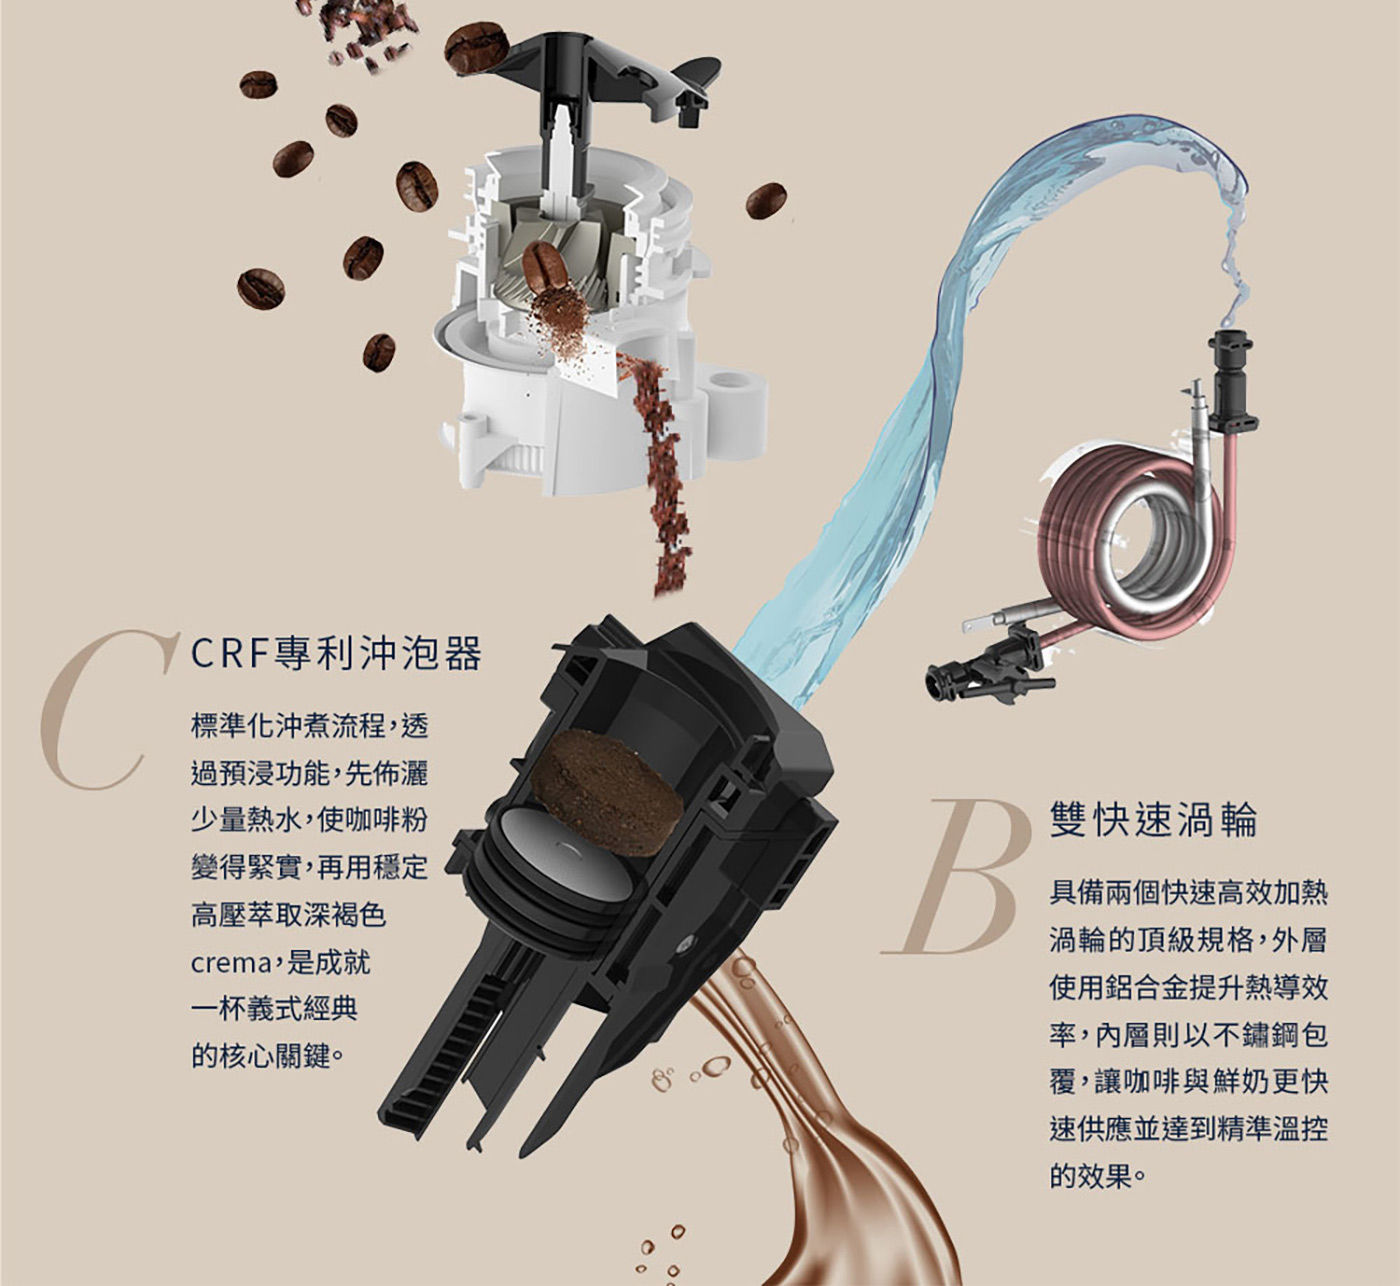 迪朗奇 全自動義式咖啡機 CRF專利沖泡器